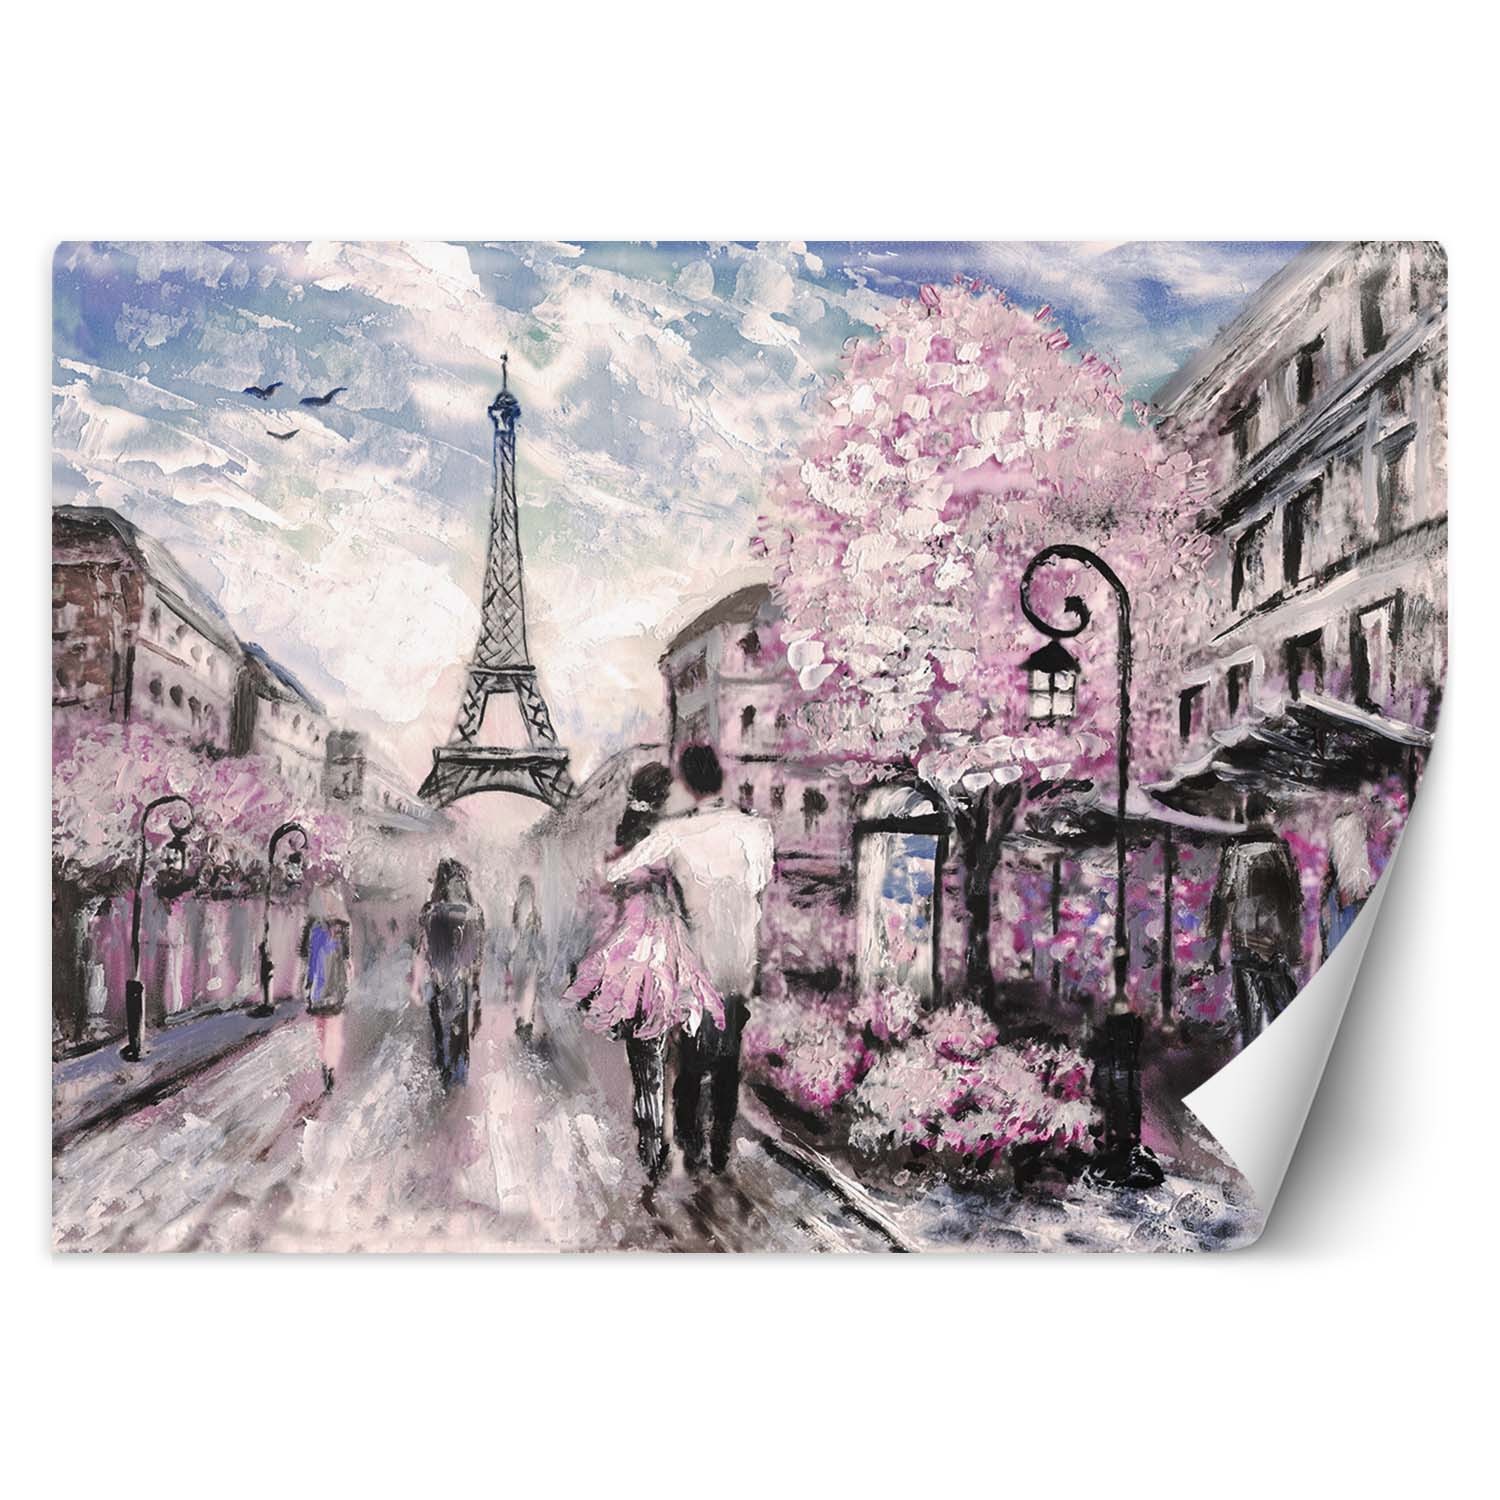 Trend24 – Behang – Parijs In Het Voorjaar – Behangpapier – Fotobehang – Behang Woonkamer – 250x175x2 cm – Incl. behanglijm